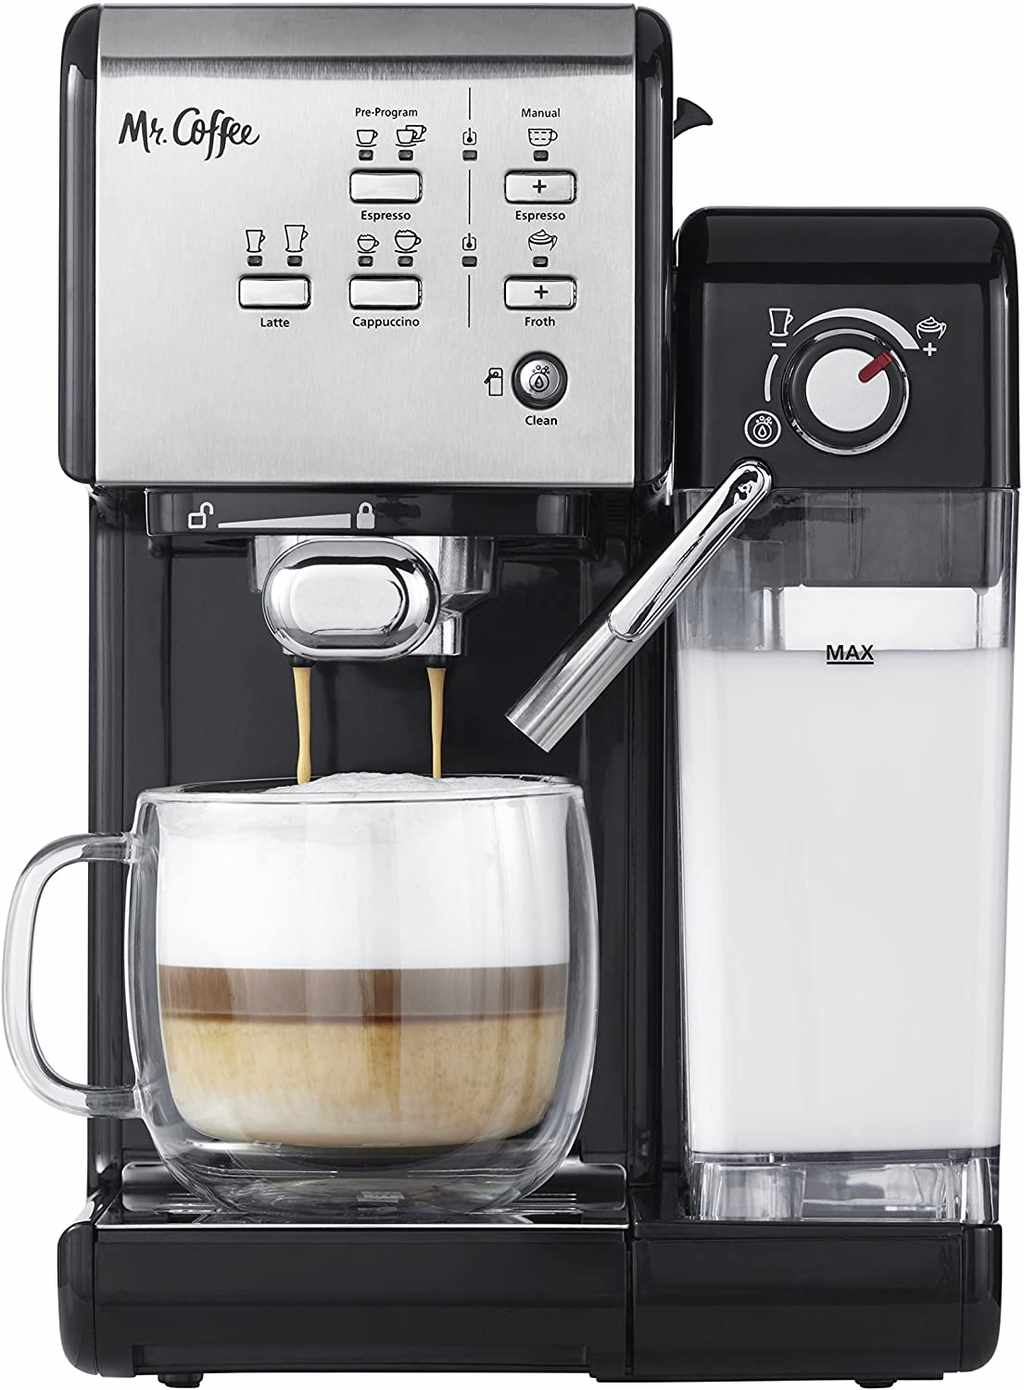 Breville Espresso Machine mejor calificada - 21 - octubre 21, 2022